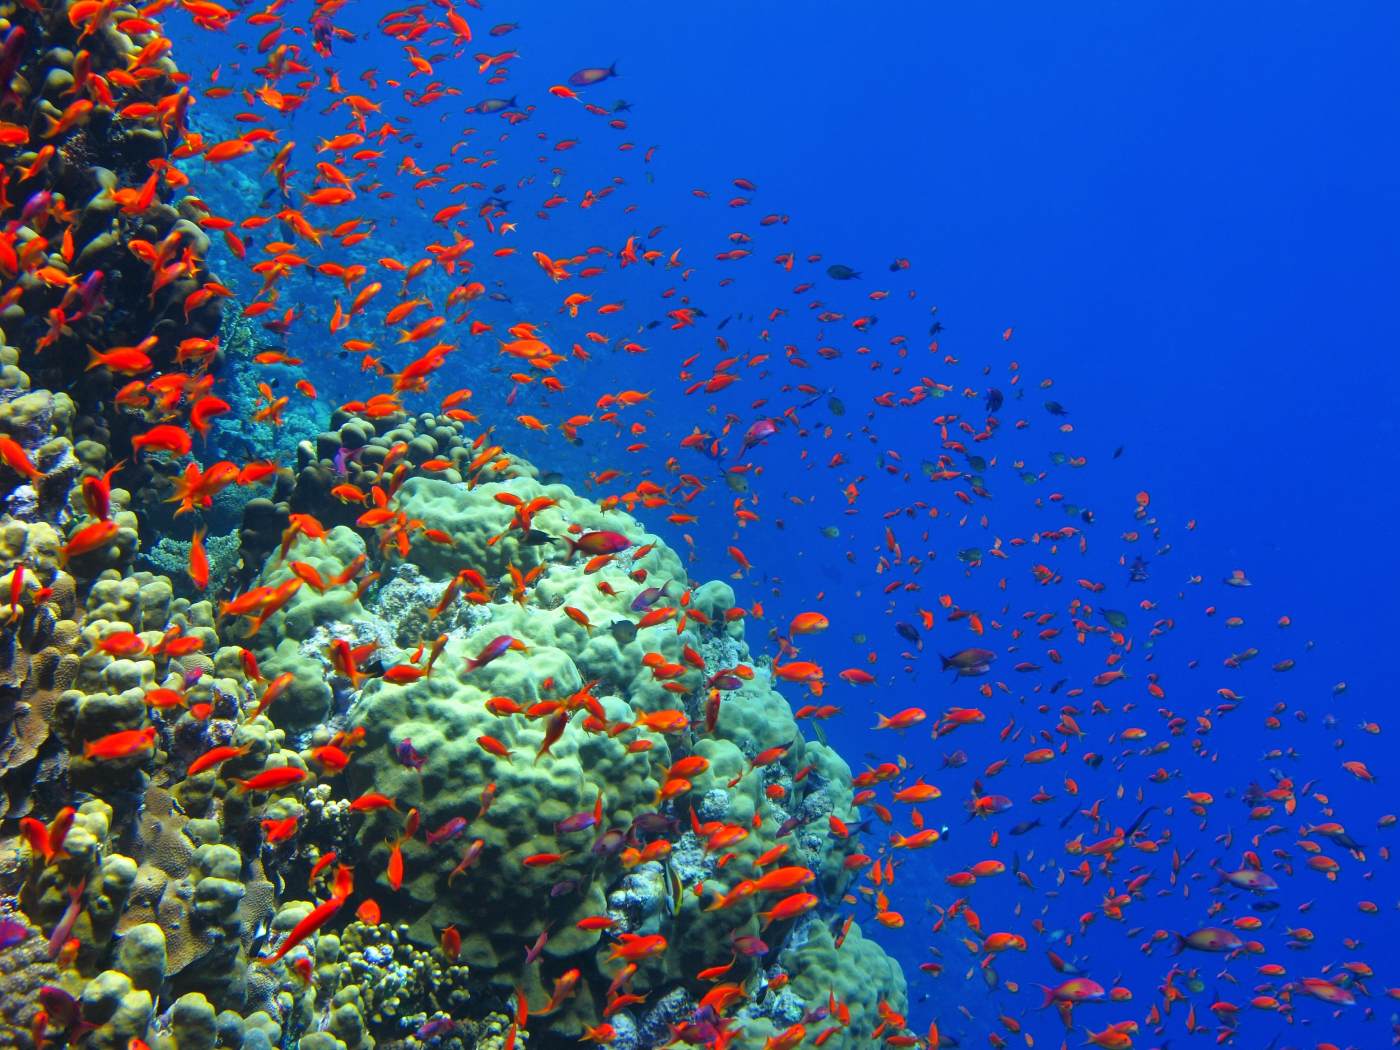 Hejno ryb a korál v hlubší vodě, snímek s externím bleskem Ikelite DS 160.